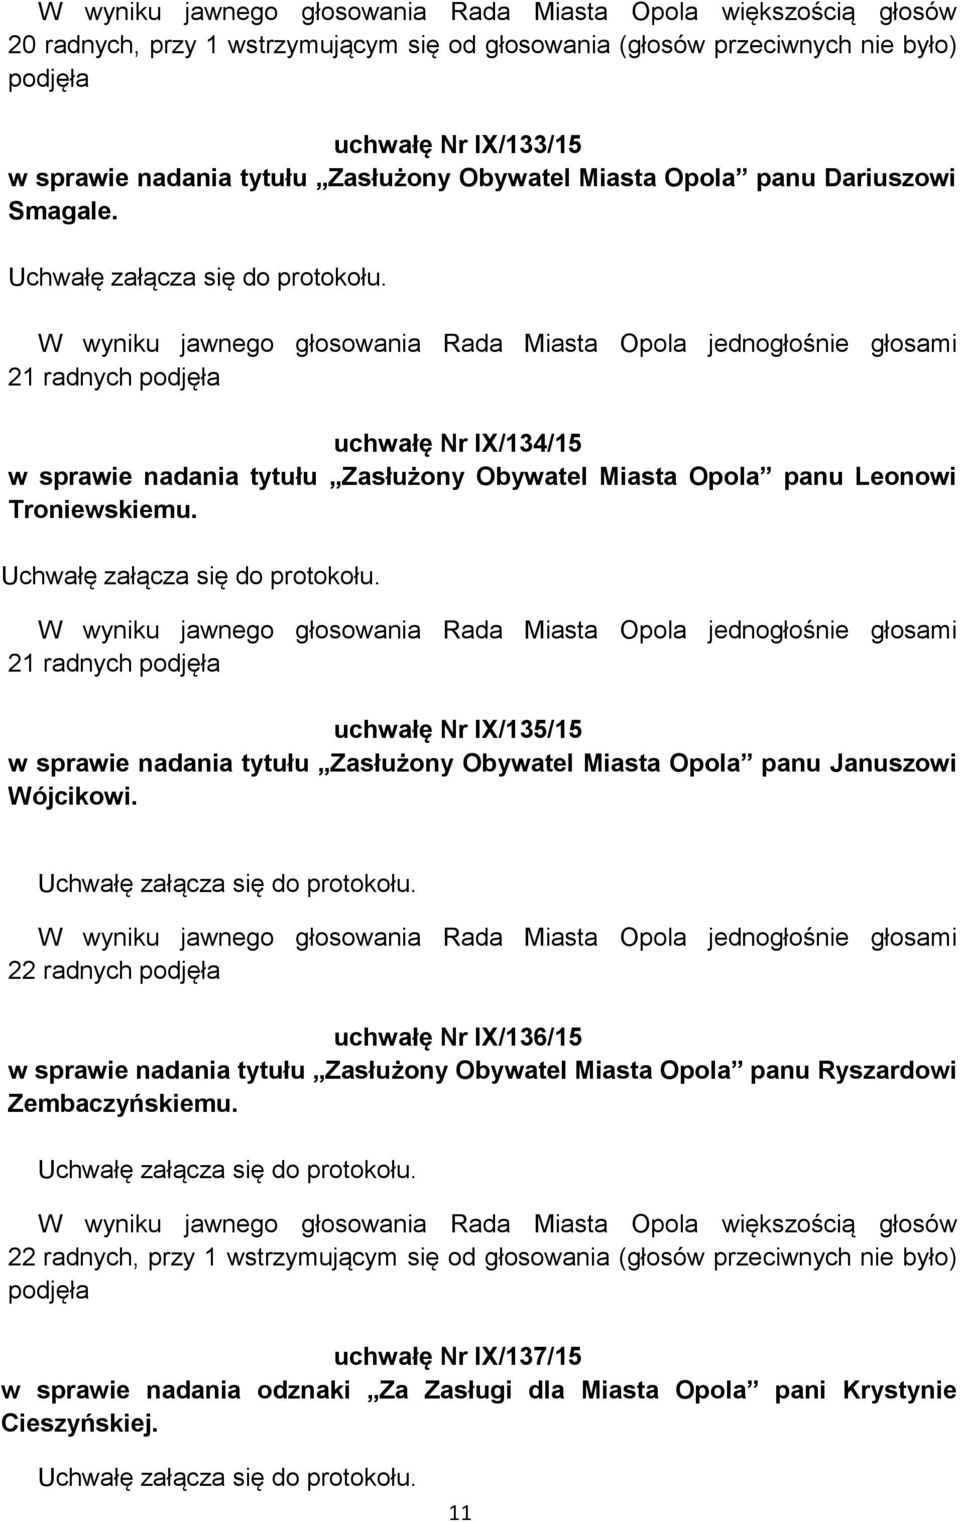 W wyniku jawnego głosowania Rada Miasta Opola jednogłośnie głosami 21 radnych uchwałę Nr IX/135/15 w sprawie nadania tytułu Zasłużony Obywatel Miasta Opola panu Januszowi Wójcikowi.